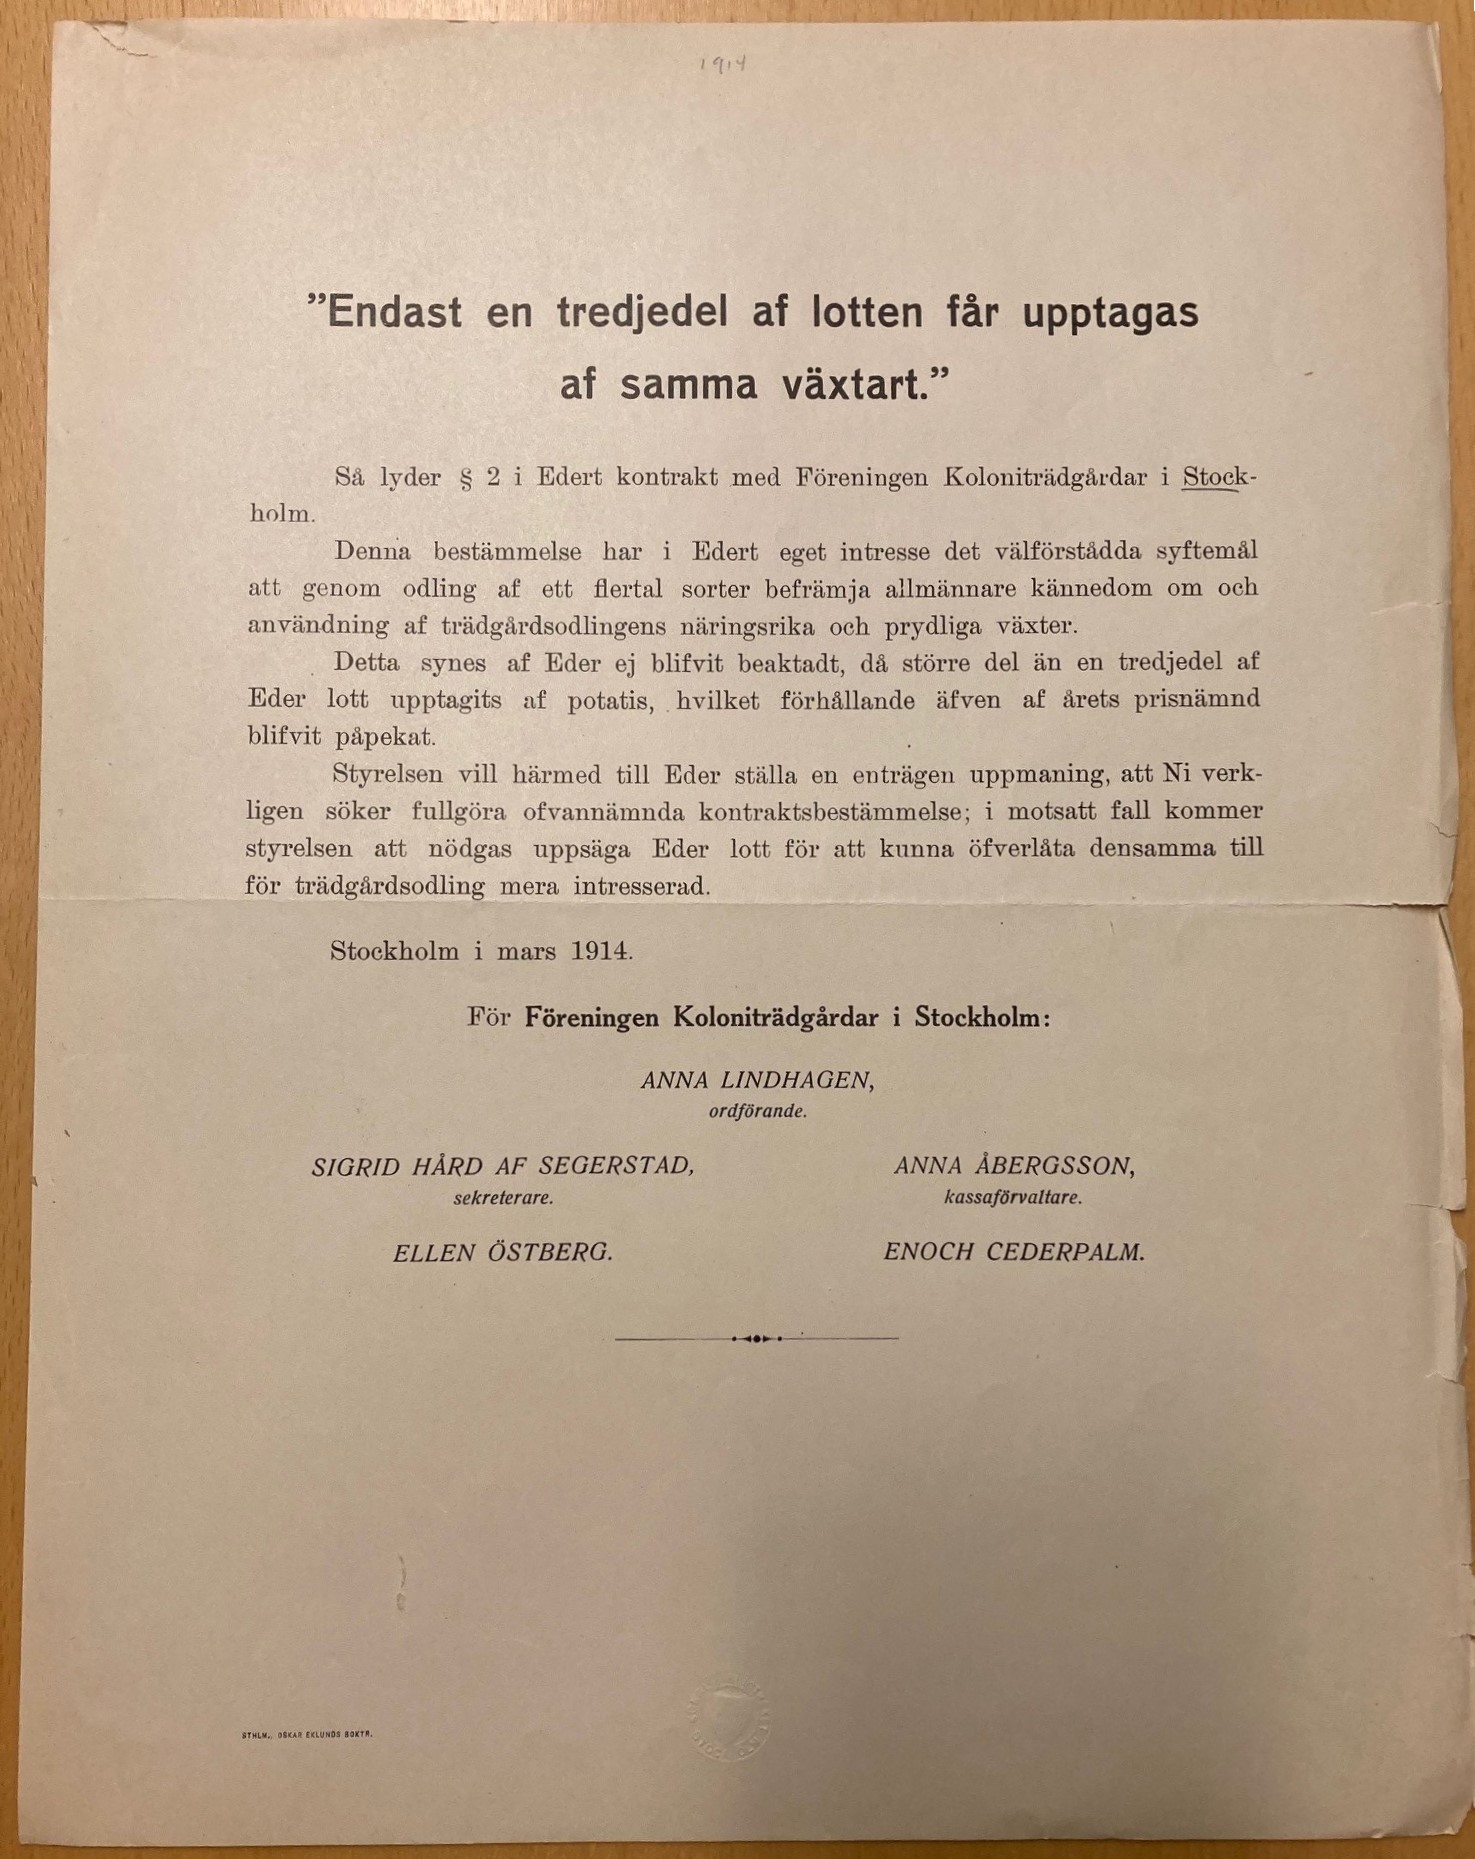 Färgfoto av ett tryckt officiellt brev på vitt papper